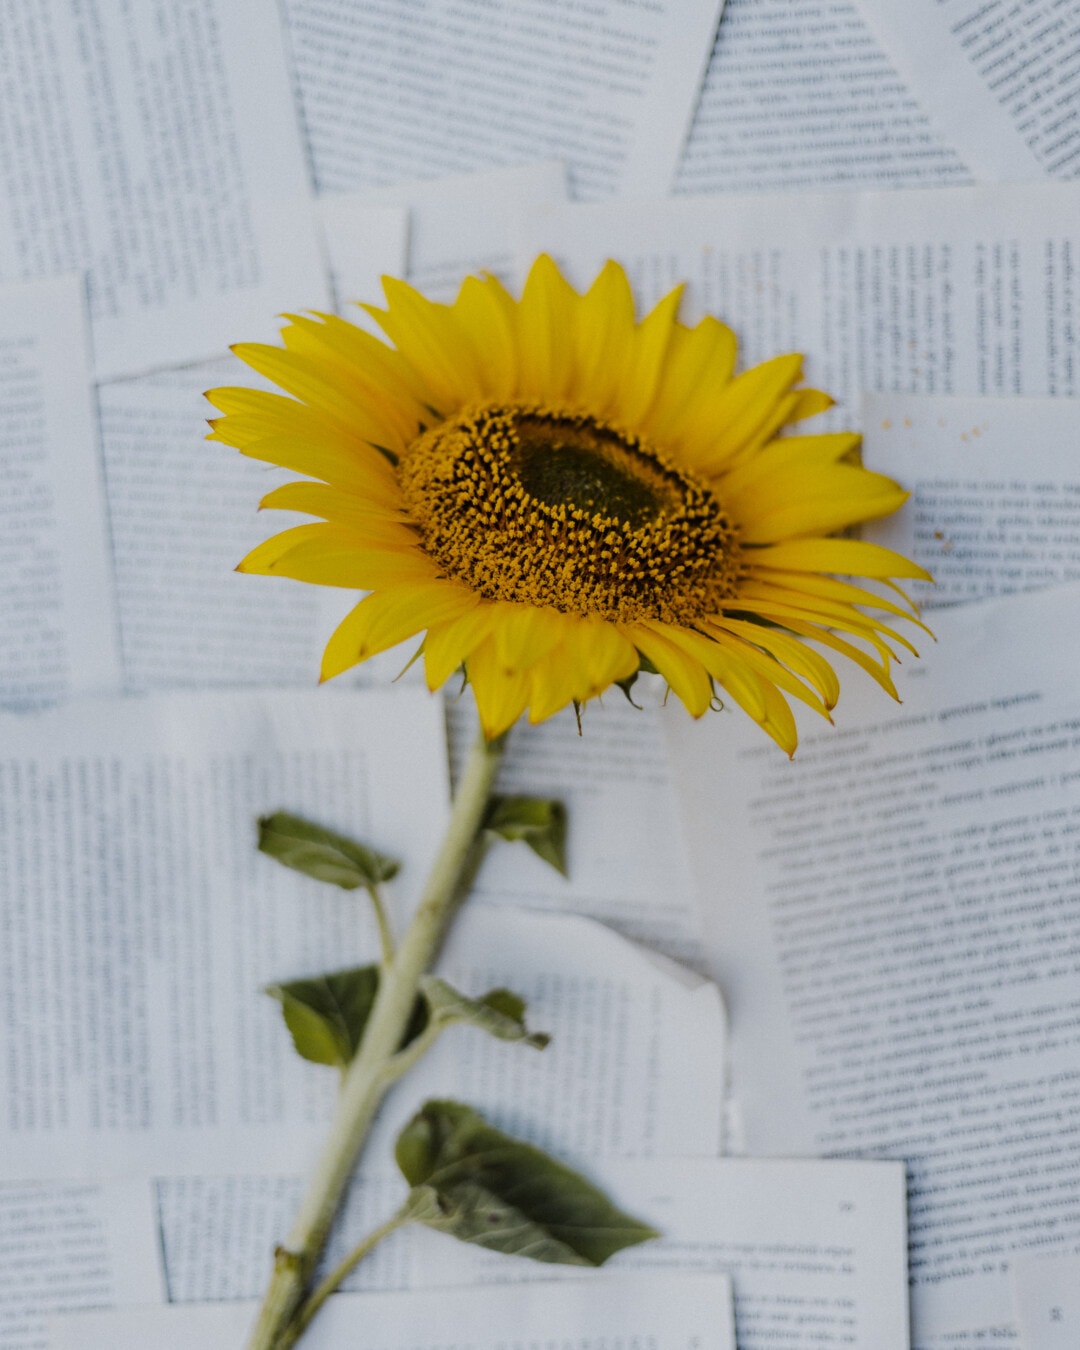 Sonnenblume, Hintergrund, Papier, Zeitung, hell, gelb, Blume, Blütenblatt, Still-Leben, Staubfäden